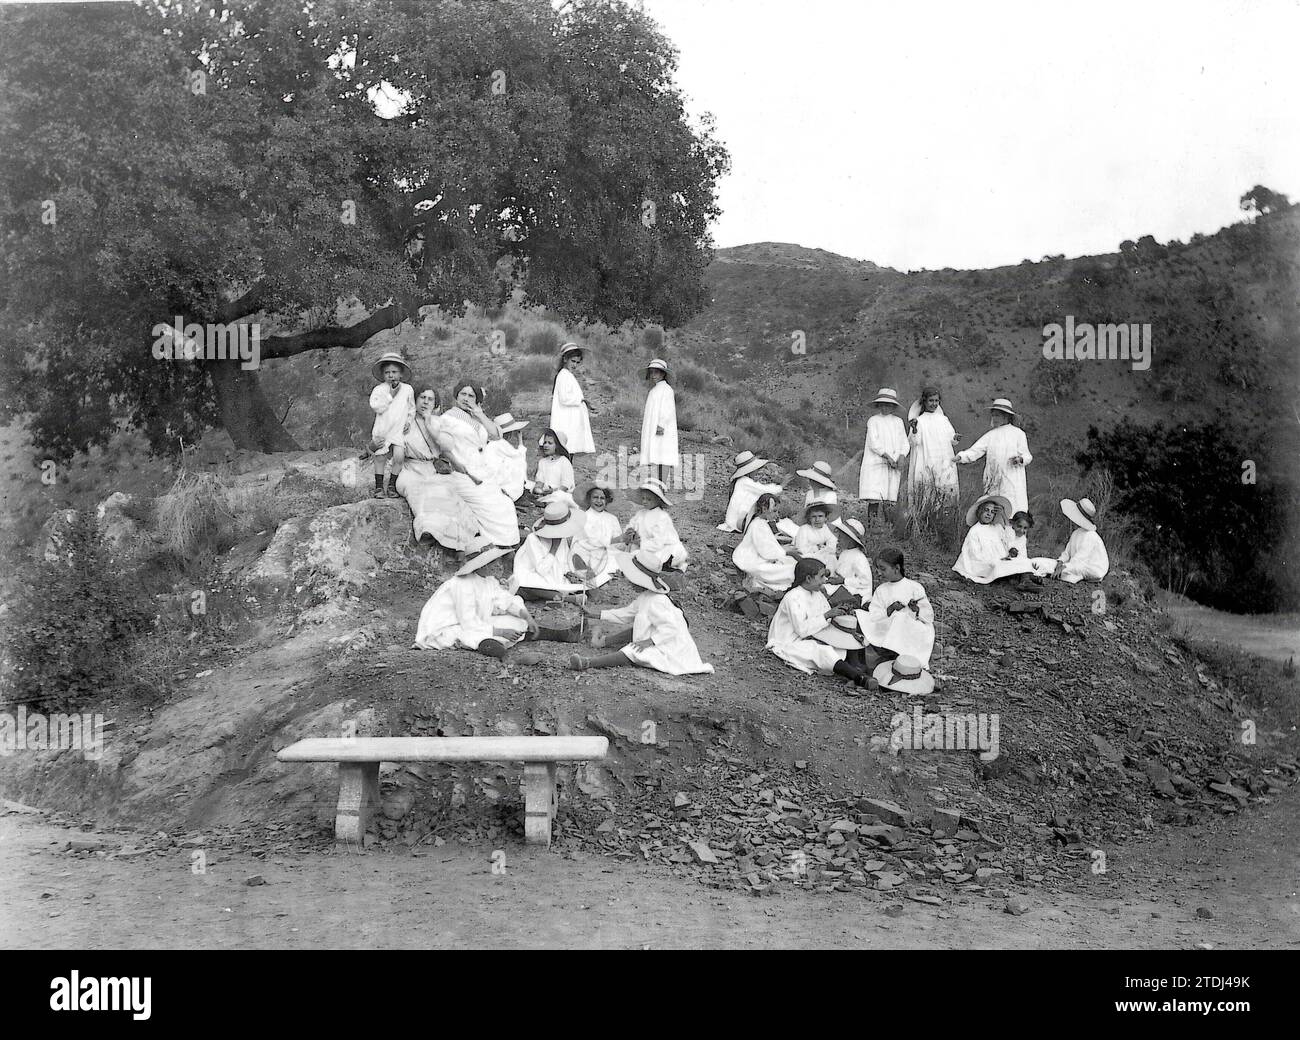 Malaga, Oktober 1911. Schulausflug. Im Bild eine Pause für die Schüler beim Bergsteigen. Quelle: Album/Archivo ABC/Fotohalle Stockfoto